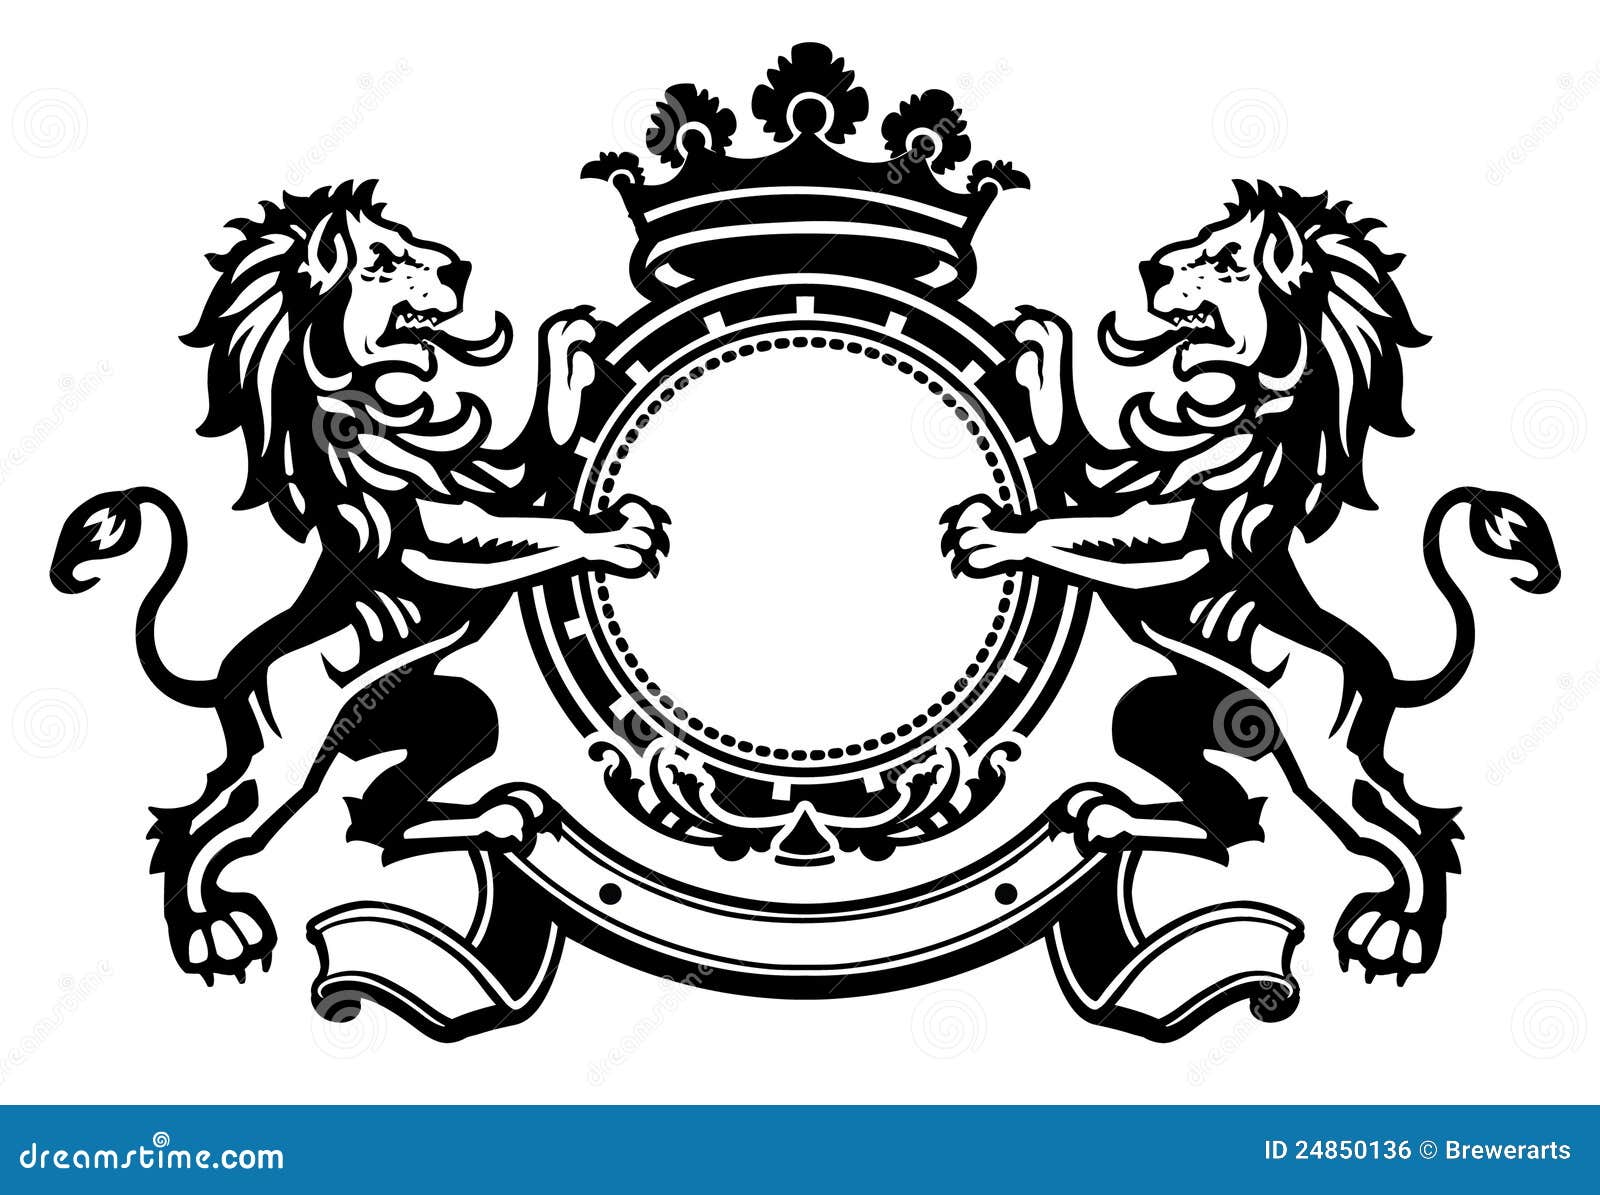 lion crest 1